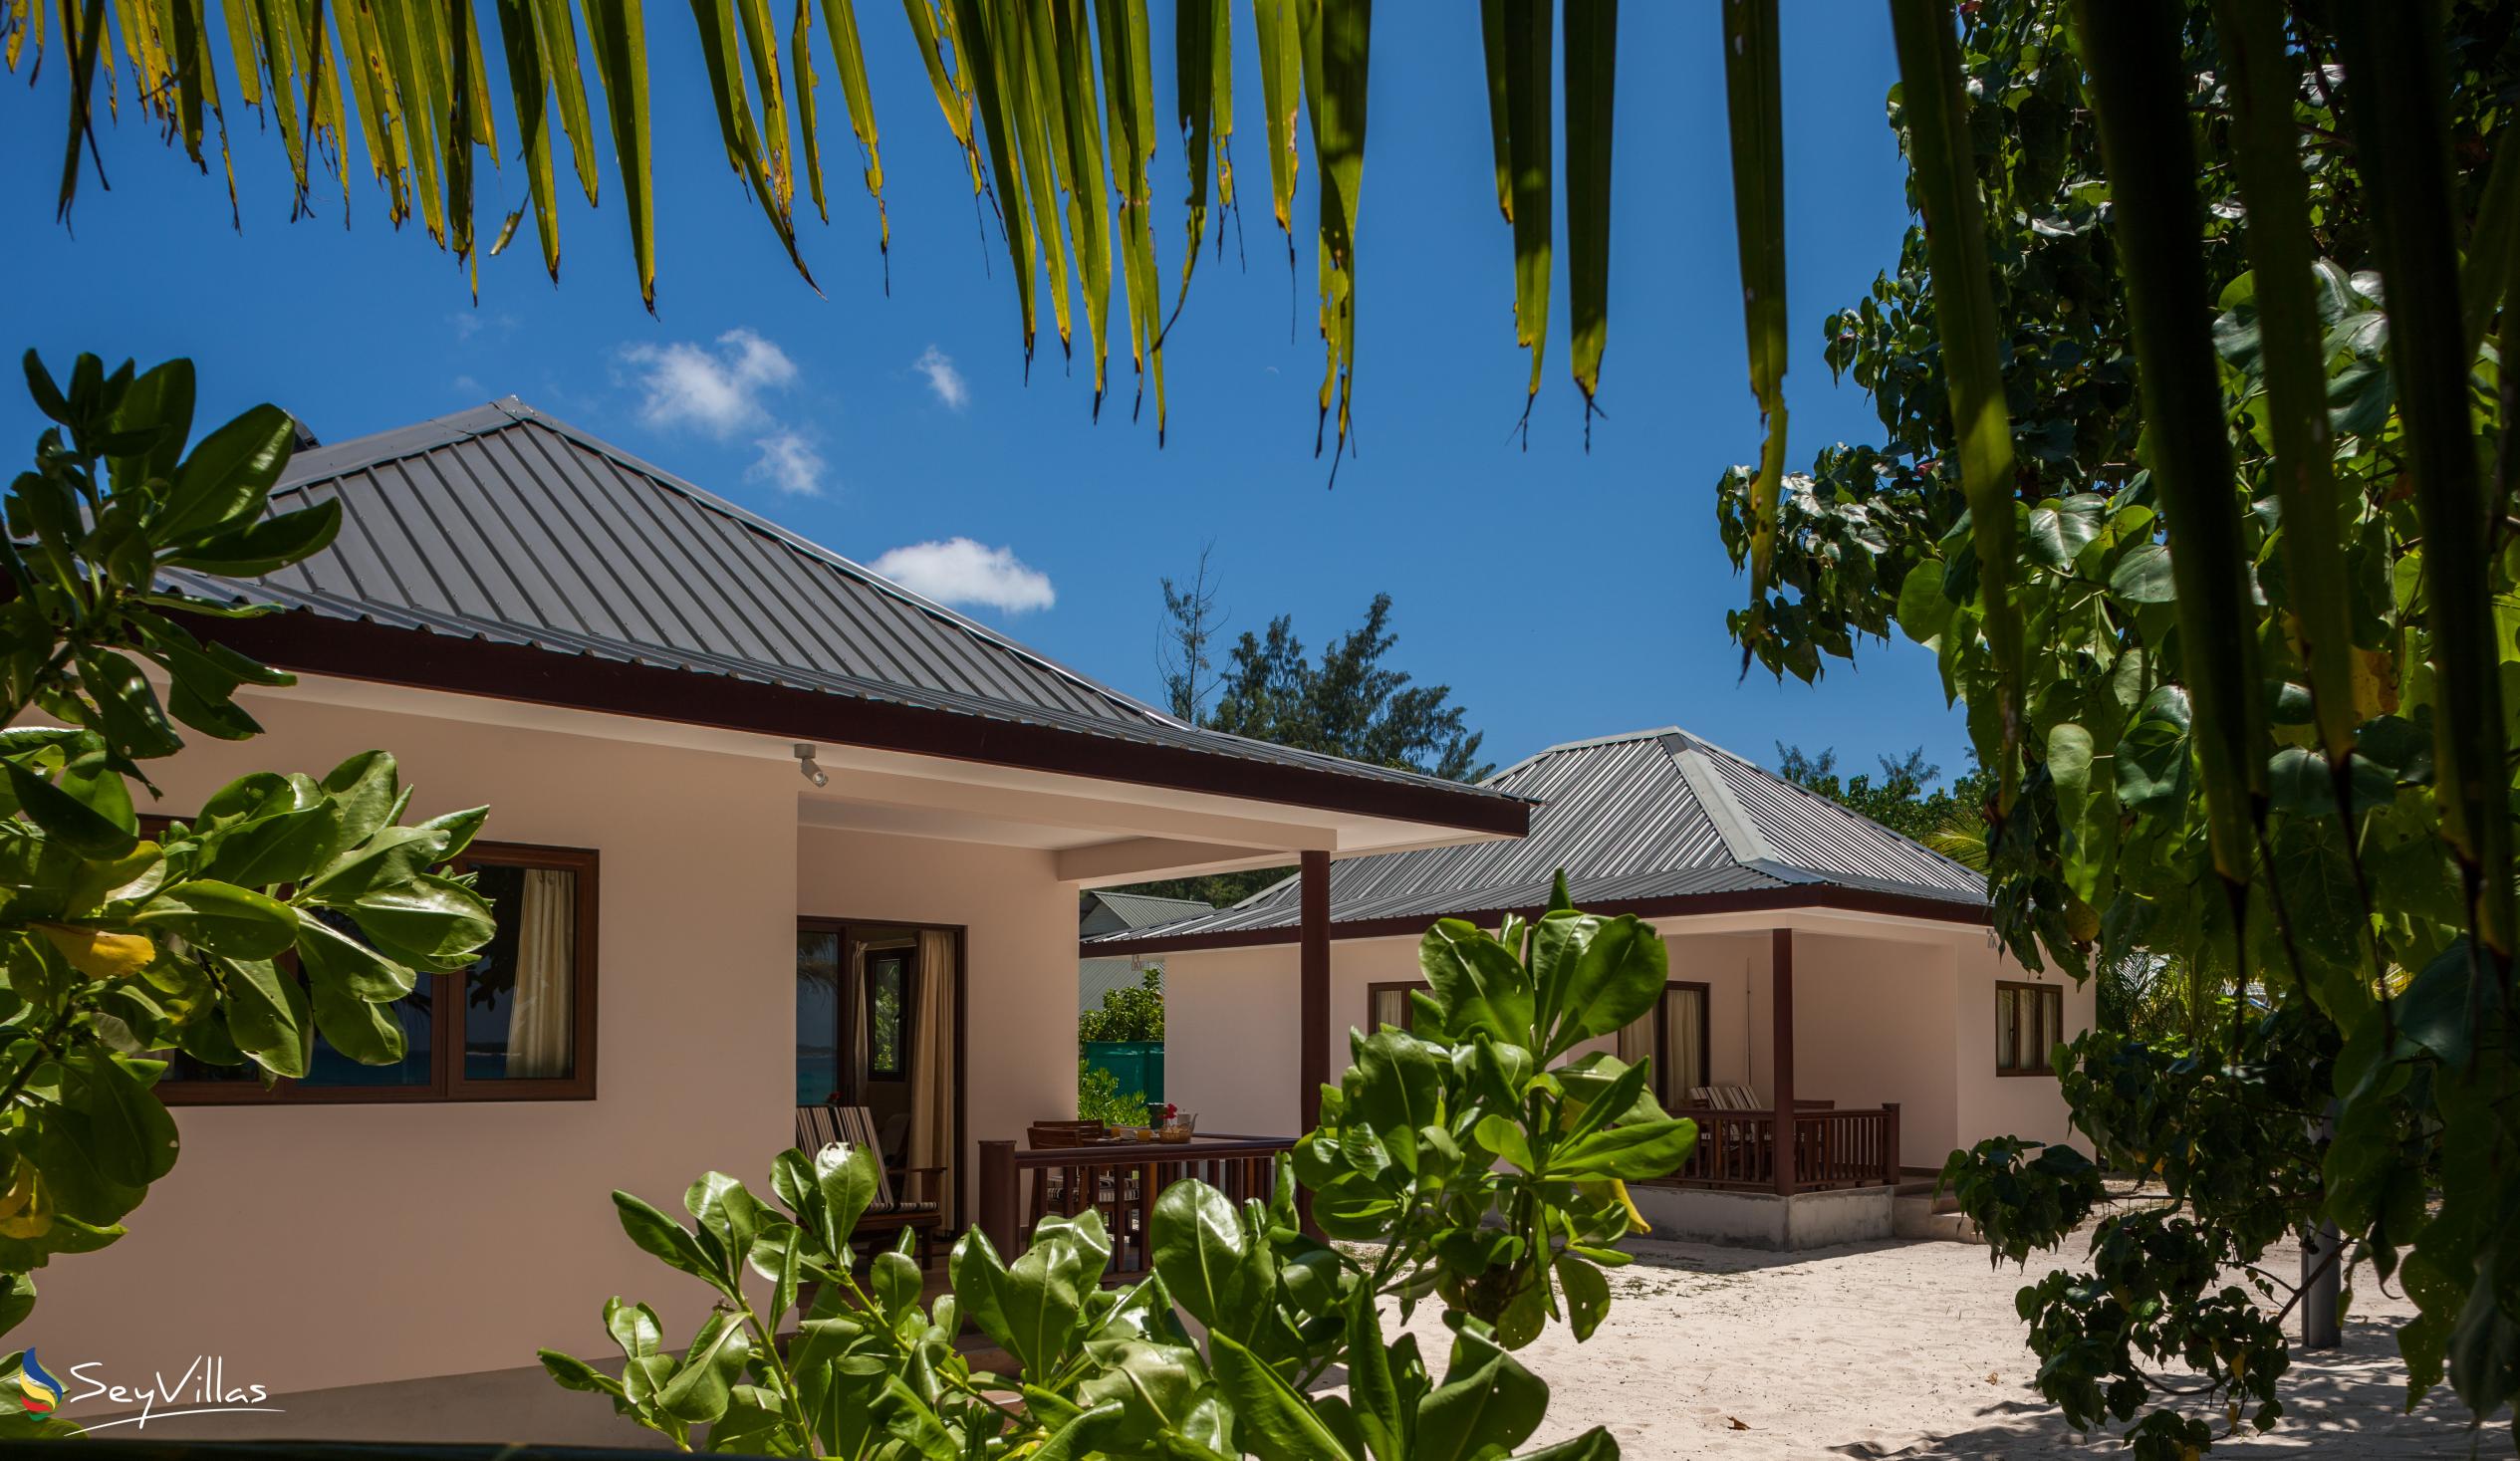 Foto 1: Villa Belle Plage - Aussenbereich - Praslin (Seychellen)